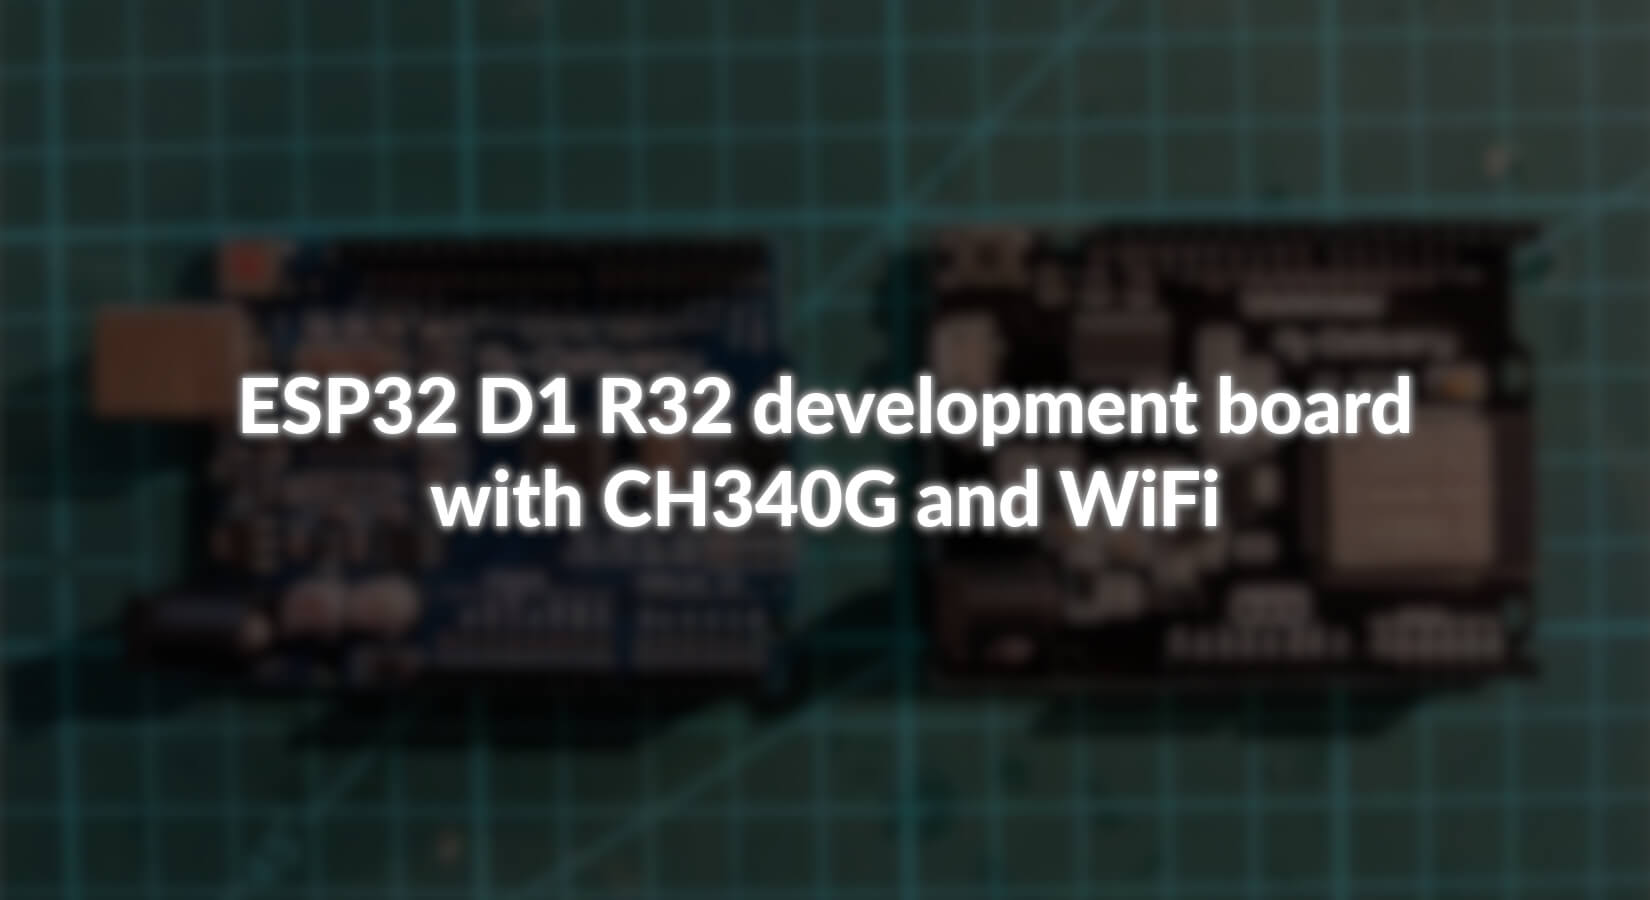 Vorstellung ESP32 D1 R32 Mikrocontroller in Uno Bauform - AZ-Delivery